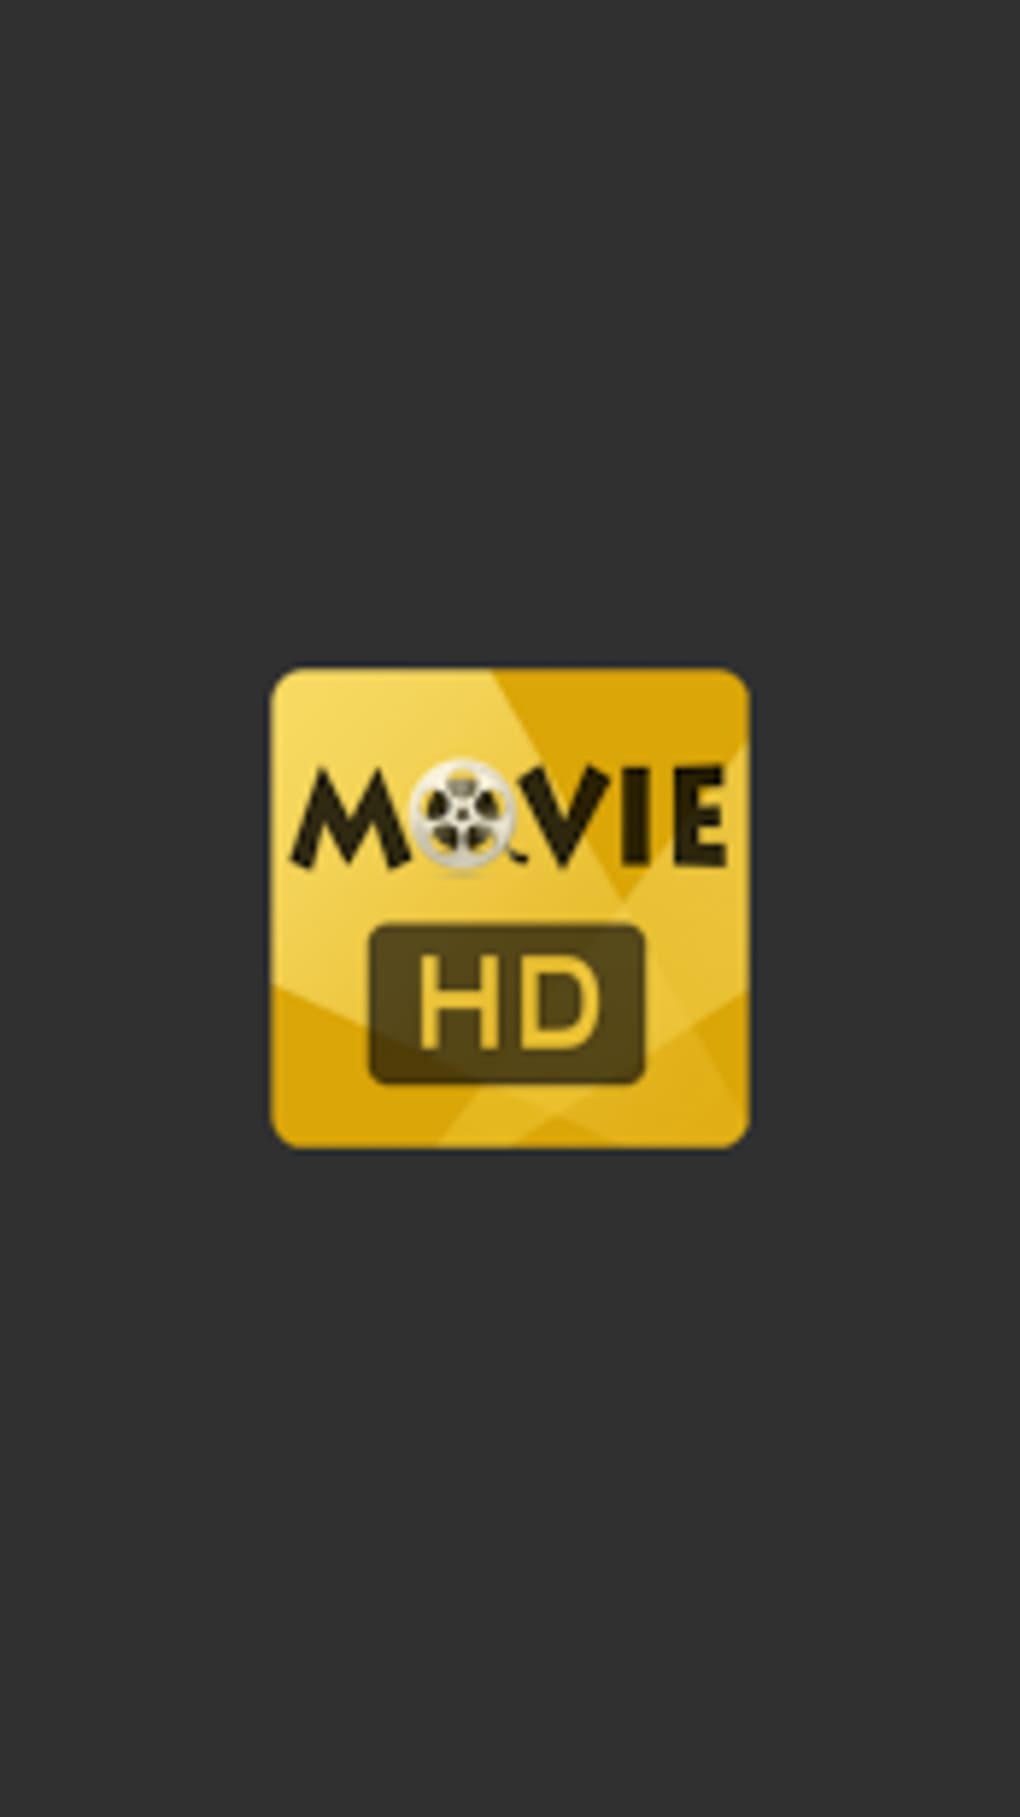 free hd porn movie downloads